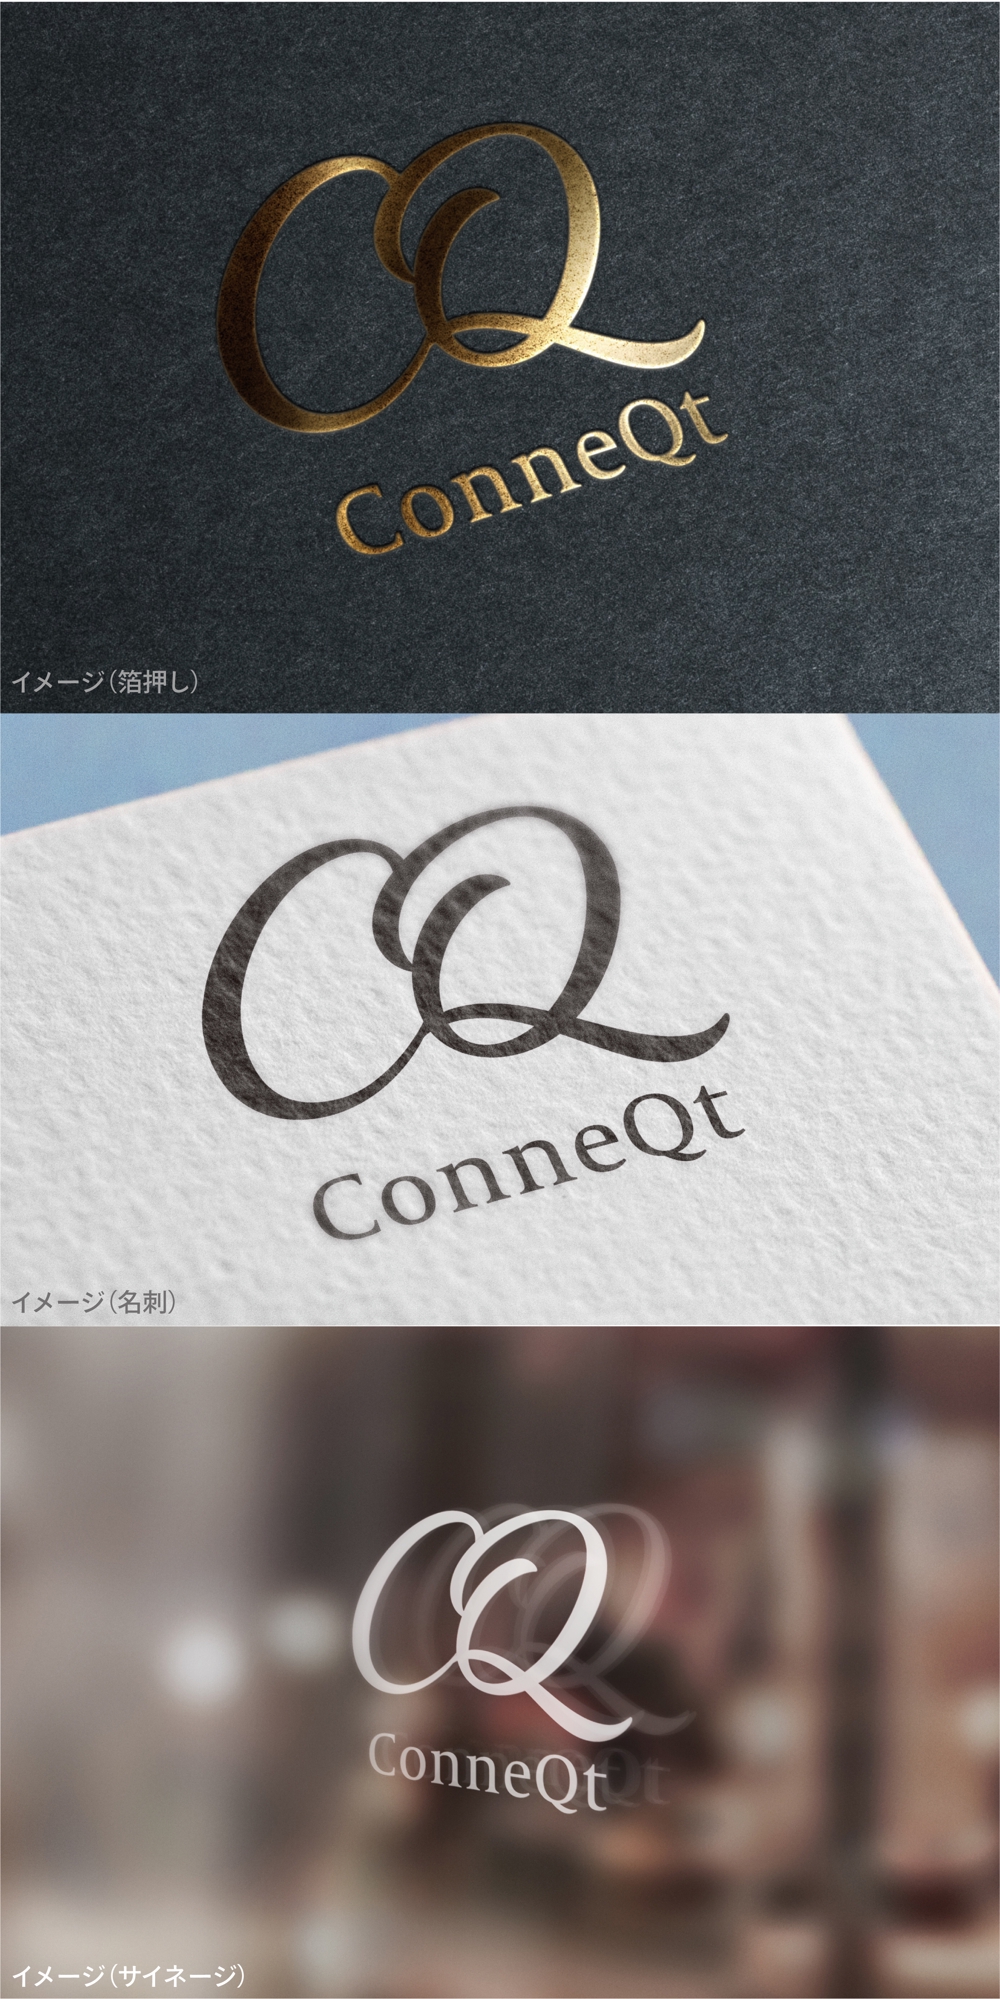 ConneQt_logo01_01.jpg